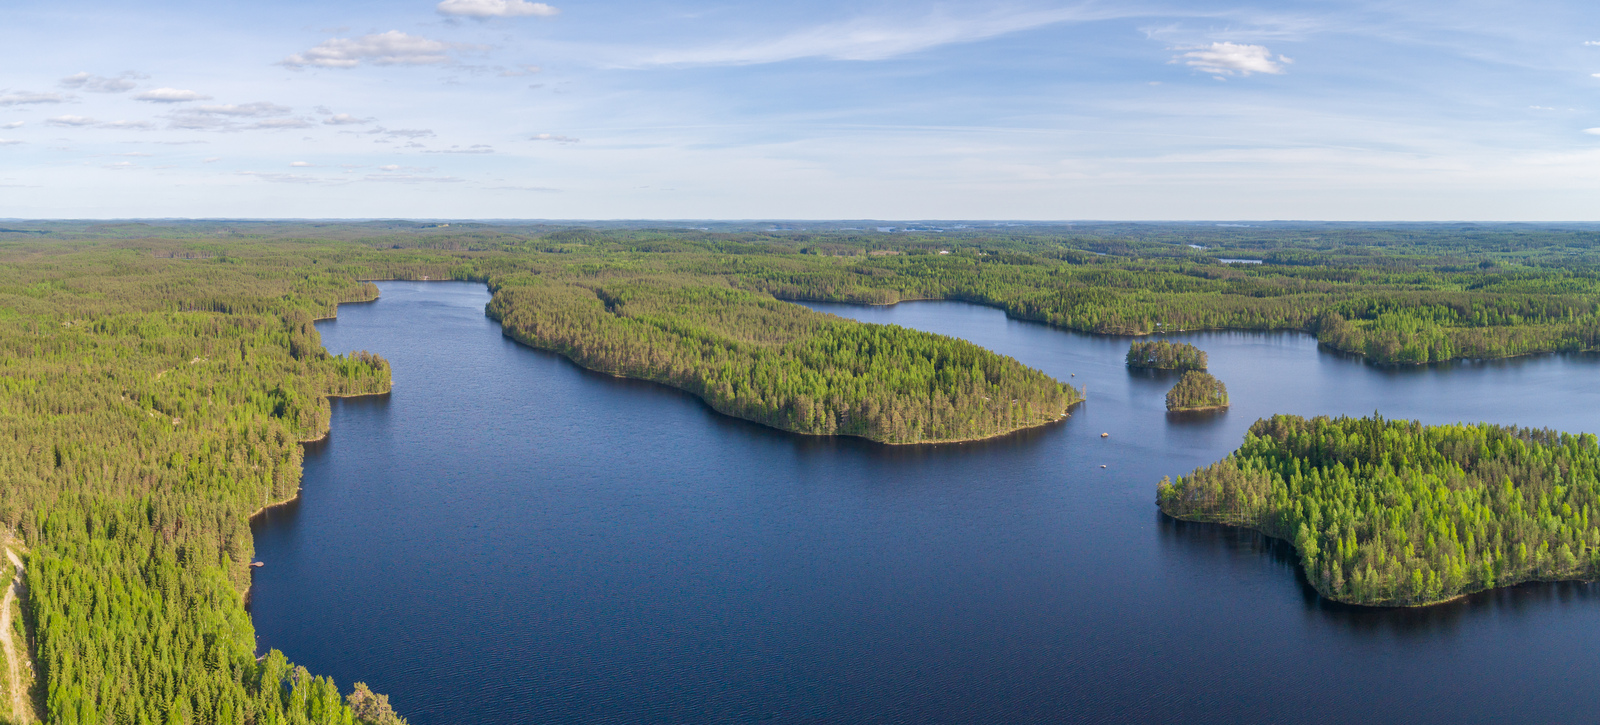 Kesämaisemassa metsien reunustama järvi ulottuu moneen eri suuntaan ja siinä on saaria. Ilmakuva.